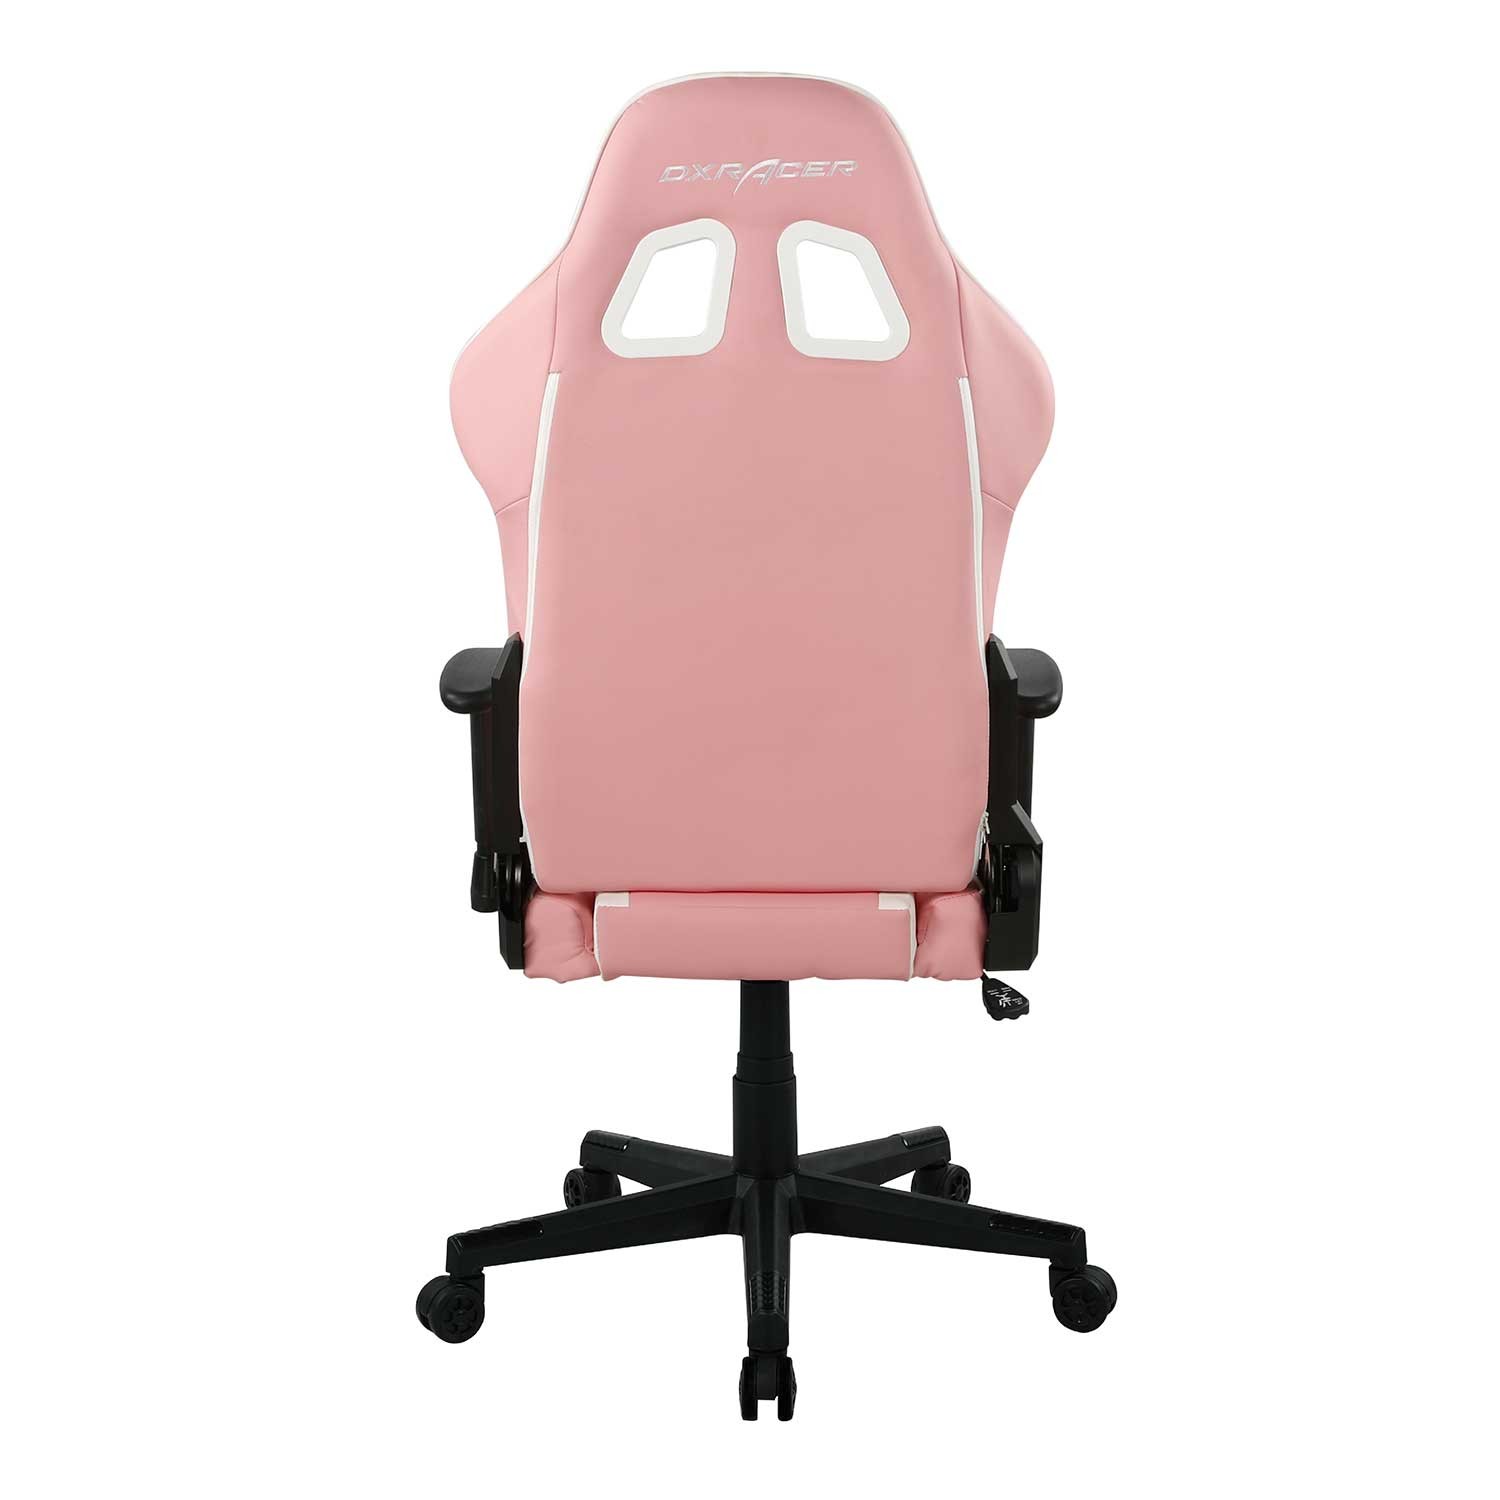 DXRacer OH/P132/PW компьютерное кресло